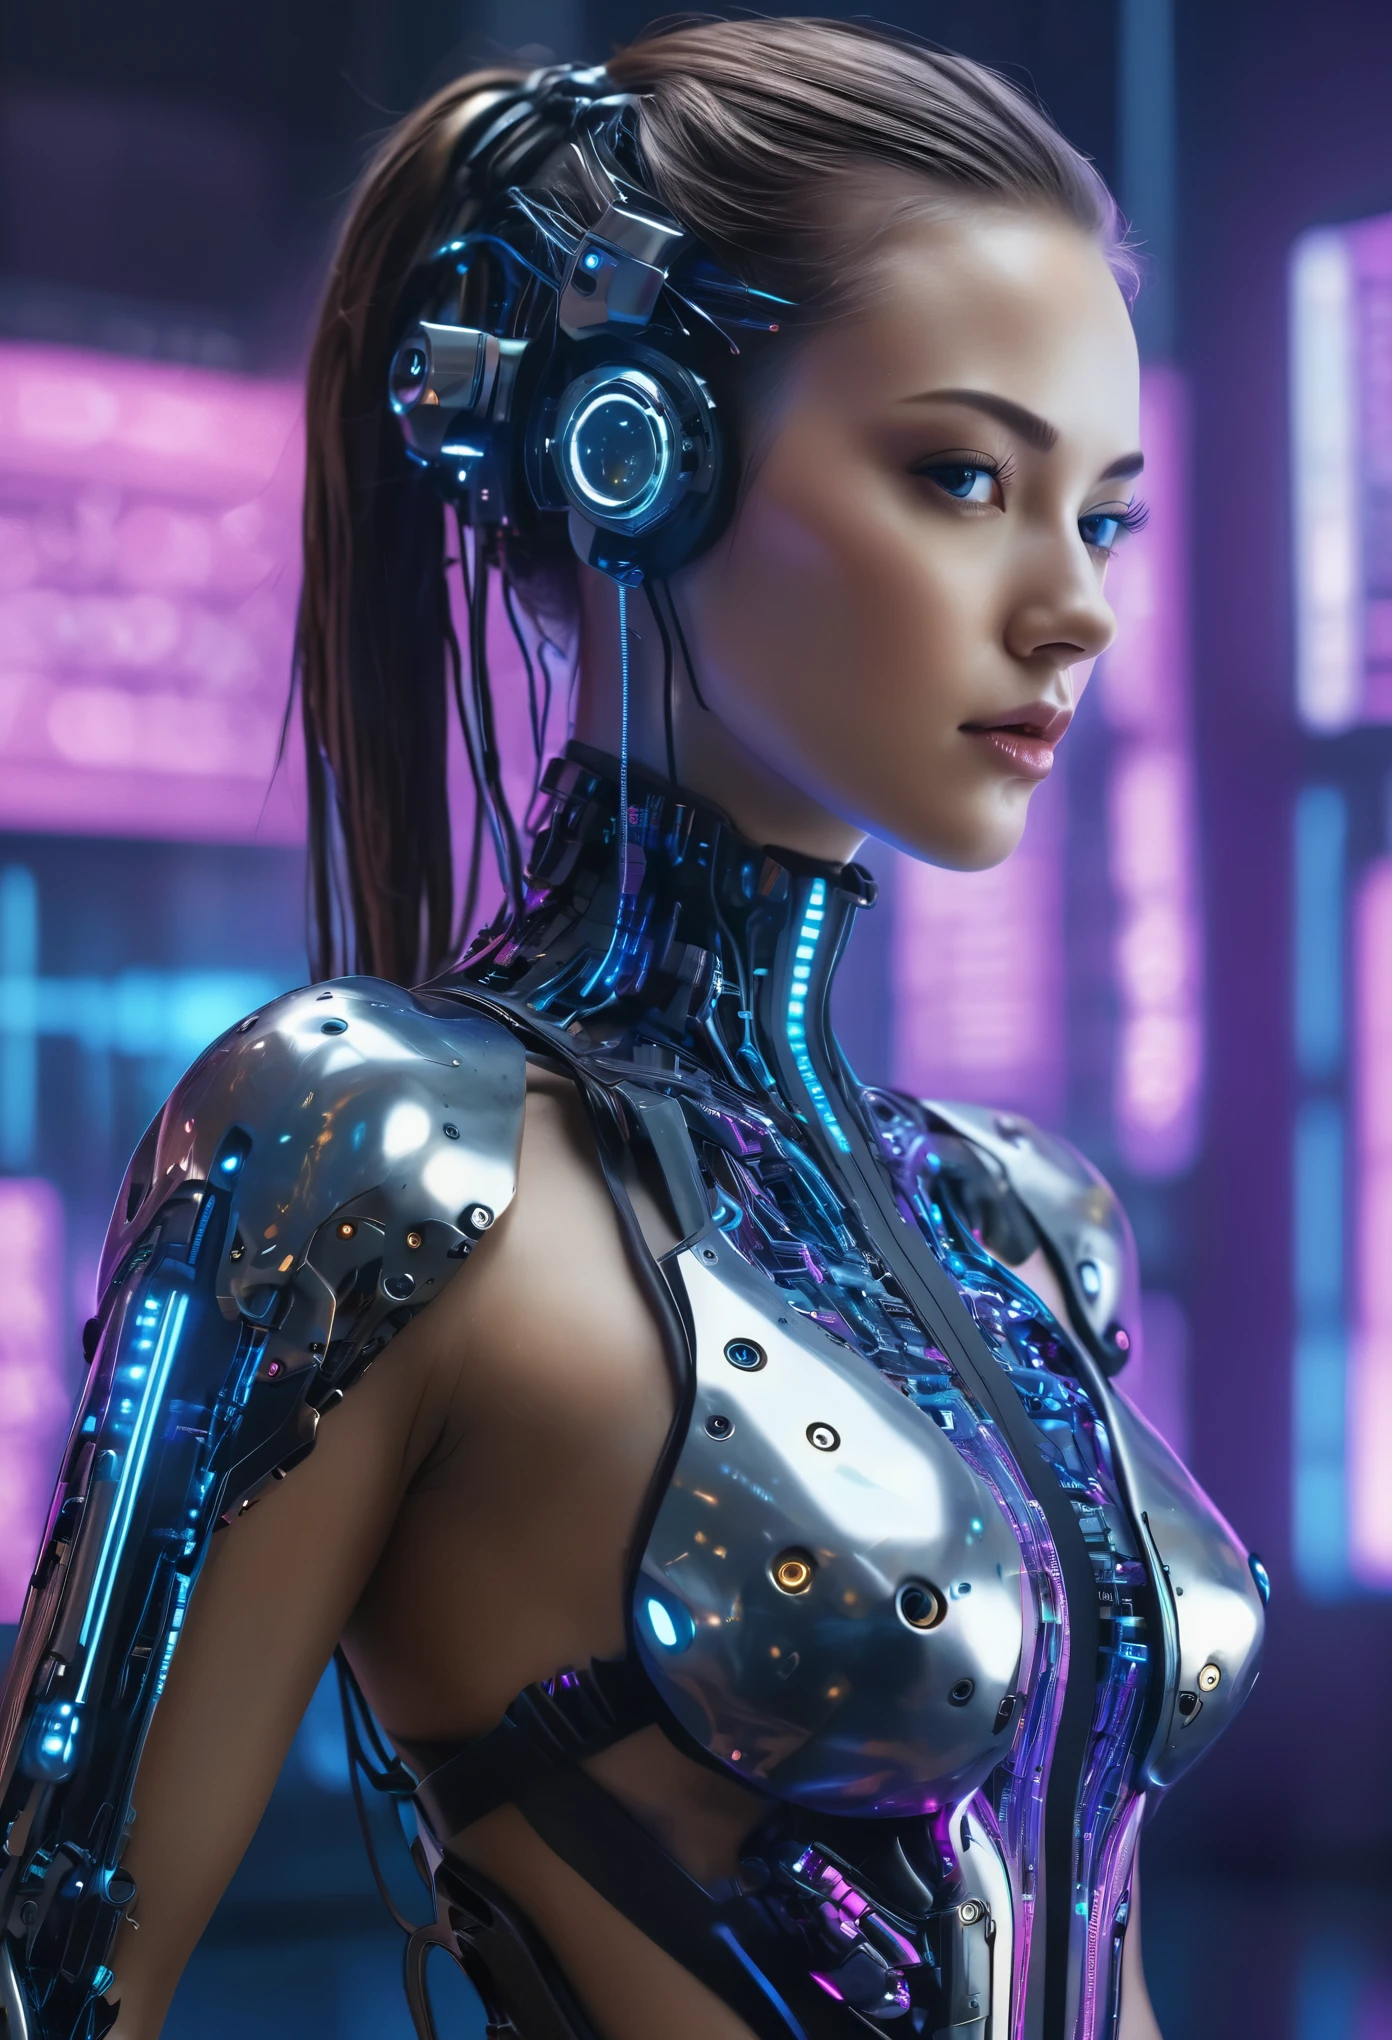 Hacker cyborg femenino futurista, cuerpo sexy (mejor calidad,4k,8k,alta resolución,Obra maestra:1.2),ultra detallado,(Realista,photoRealista,photo-Realista:1.37),Ciencia ficción,artistas conceptuales,luces de neón brillantes,poderosa presencia,mundo distópico,atmósfera ciberpunk,implantes tecnológicos,mirada intensa,brazos robóticos multifuncionales,diseño elegante y estilizado,fondo digital tipo matriz,paleta de colores azul y morado,enfoque nítido,colores vívidos,aura misteriosa,Presencia de la inteligencia artificial,interfaz de teclado,Herramientas avanzadas de hacking,visión mejorada con pantalla de realidad aumentada,Sutiles circuitos brillantes en su piel.,Pose segura y atractiva,accesorios de alta tecnología,texturas metálicas plateadas,cerebro cibernético avanzado,Mejoras cibernéticas que se combinan perfectamente con su cuerpo.,transmisión de código complejo en segundo plano,Integración perfecta de humanos y máquinas,Destreza tecnológica,trascendiendo los límites entre humanos y máquinas,encarnando la fusión de belleza y tecnología,logrando un equilibrio entre fuerza y feminidad,Representando el futuro de los avances cibernéticos..